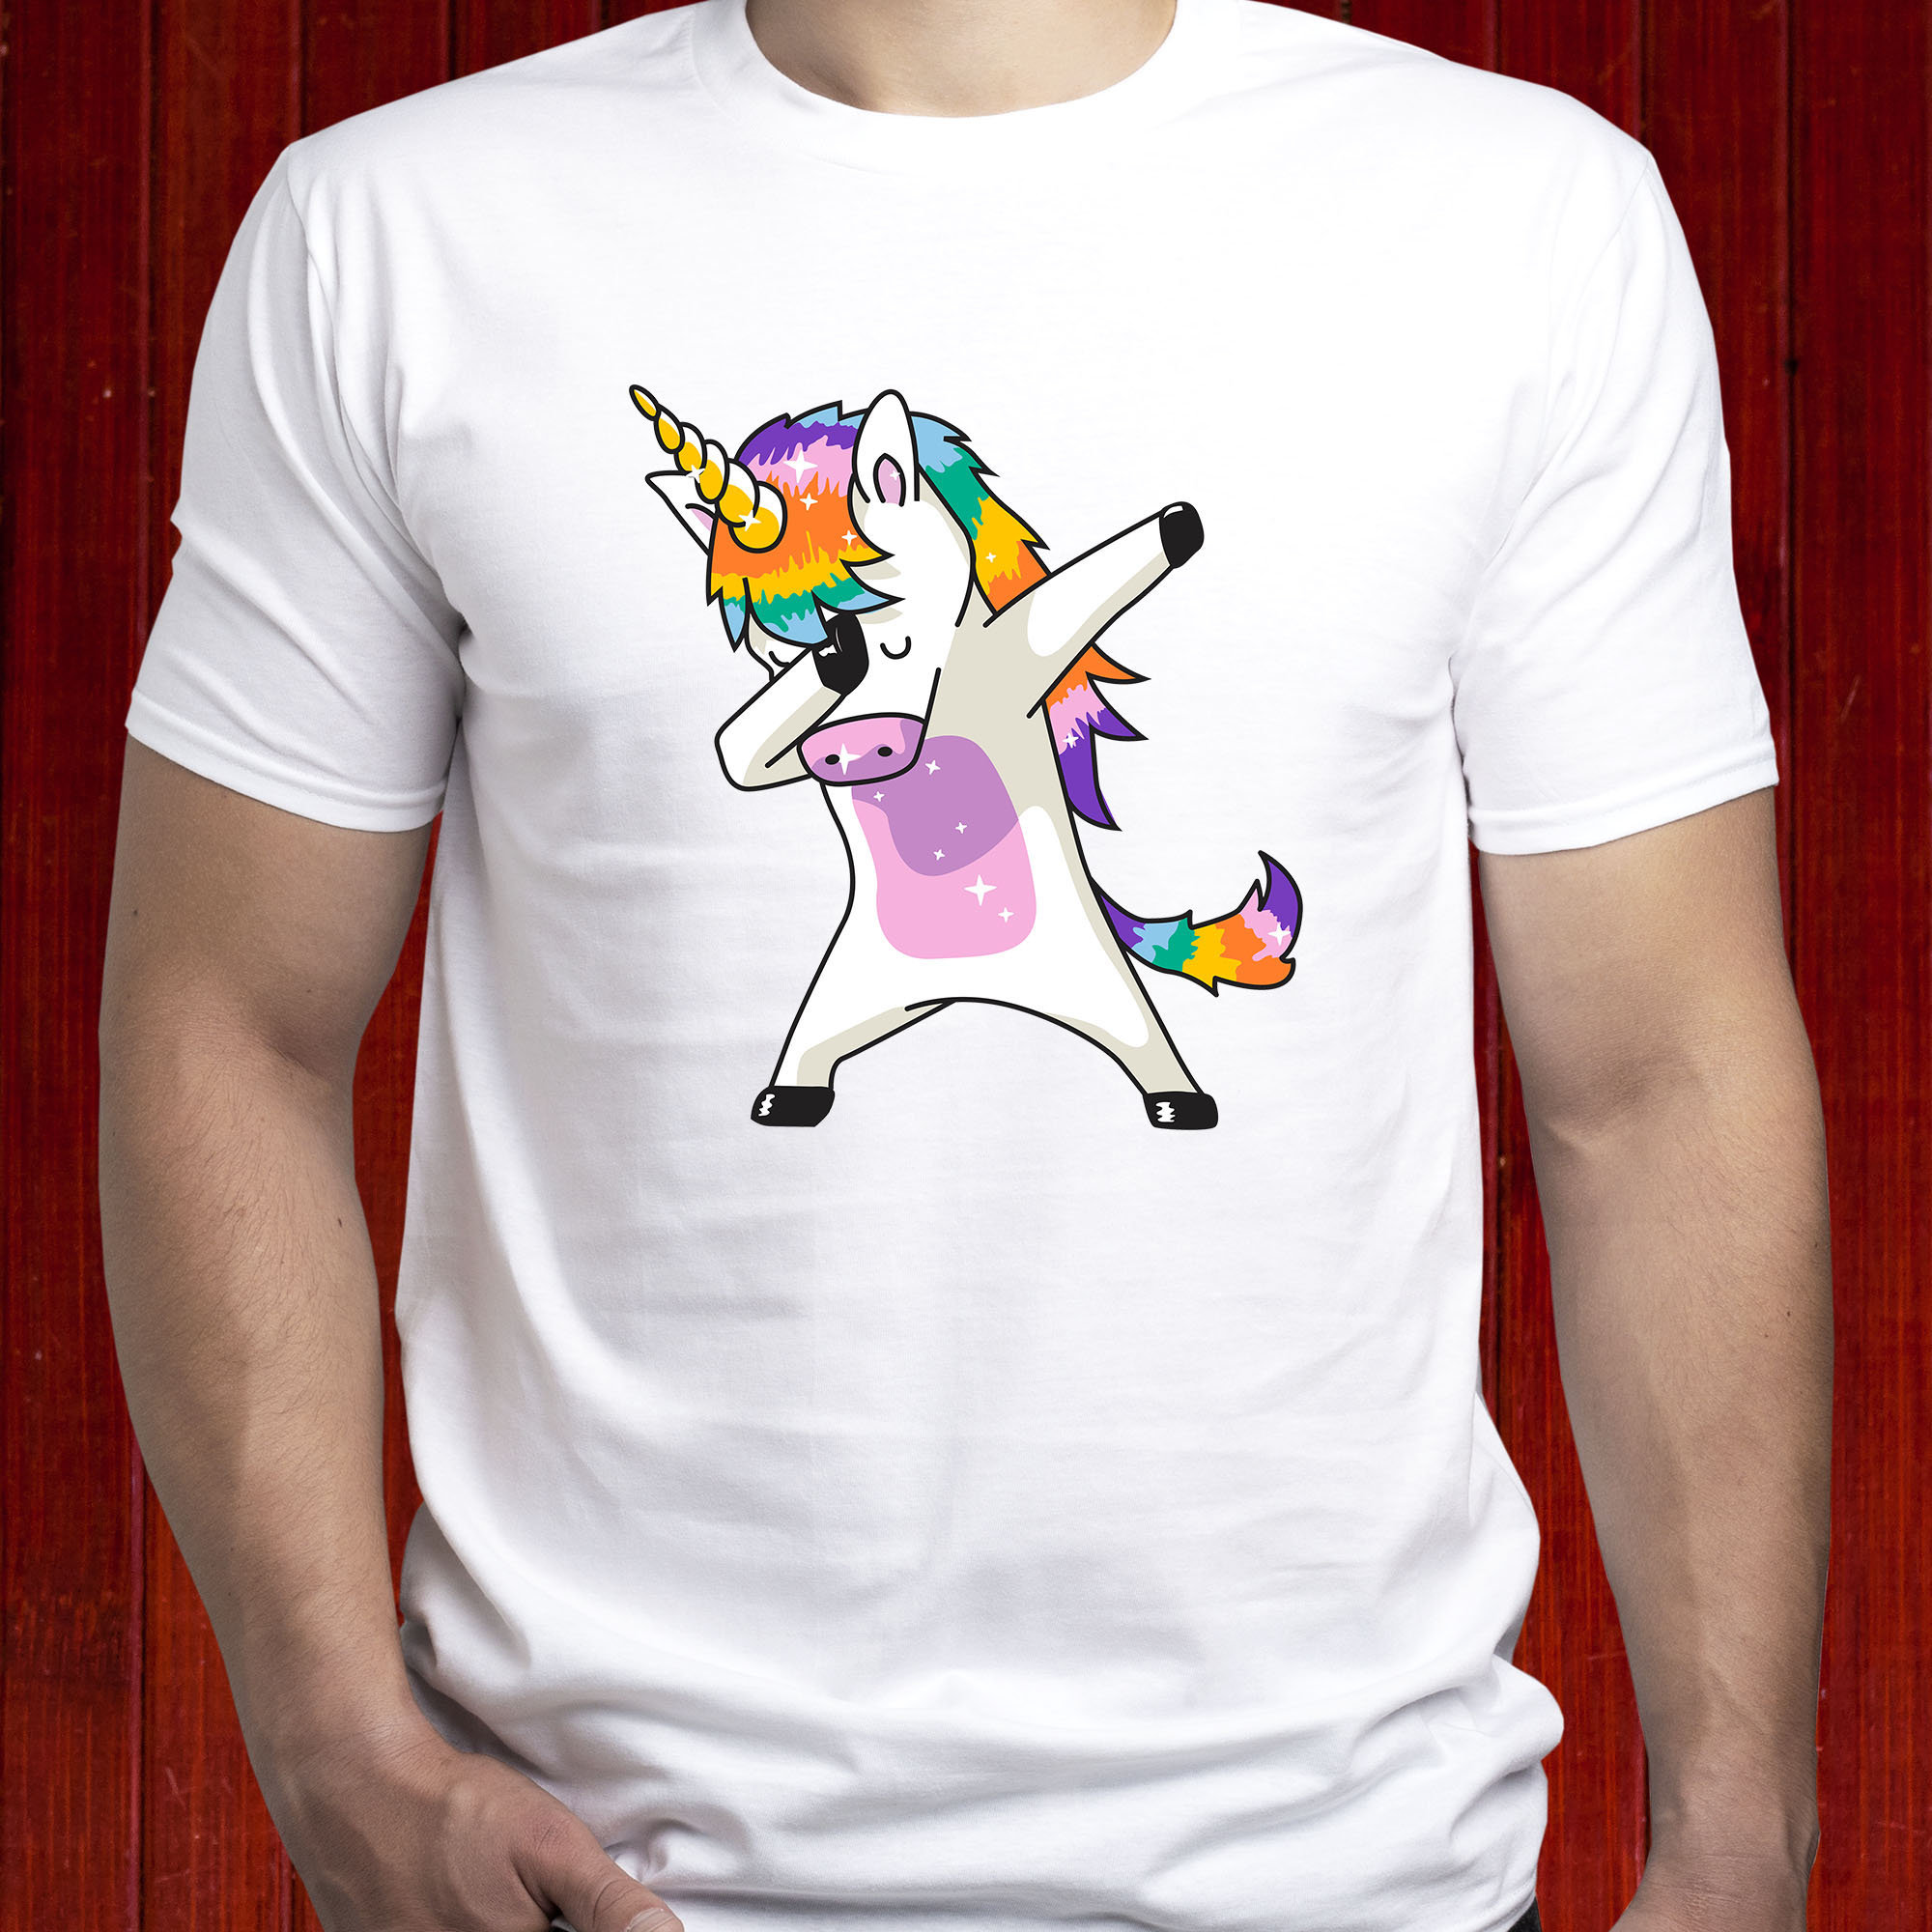 Dabbing Unicorn T-shirt/ Dab T Shirt/ Unicorn Tshirt/ Rainbow